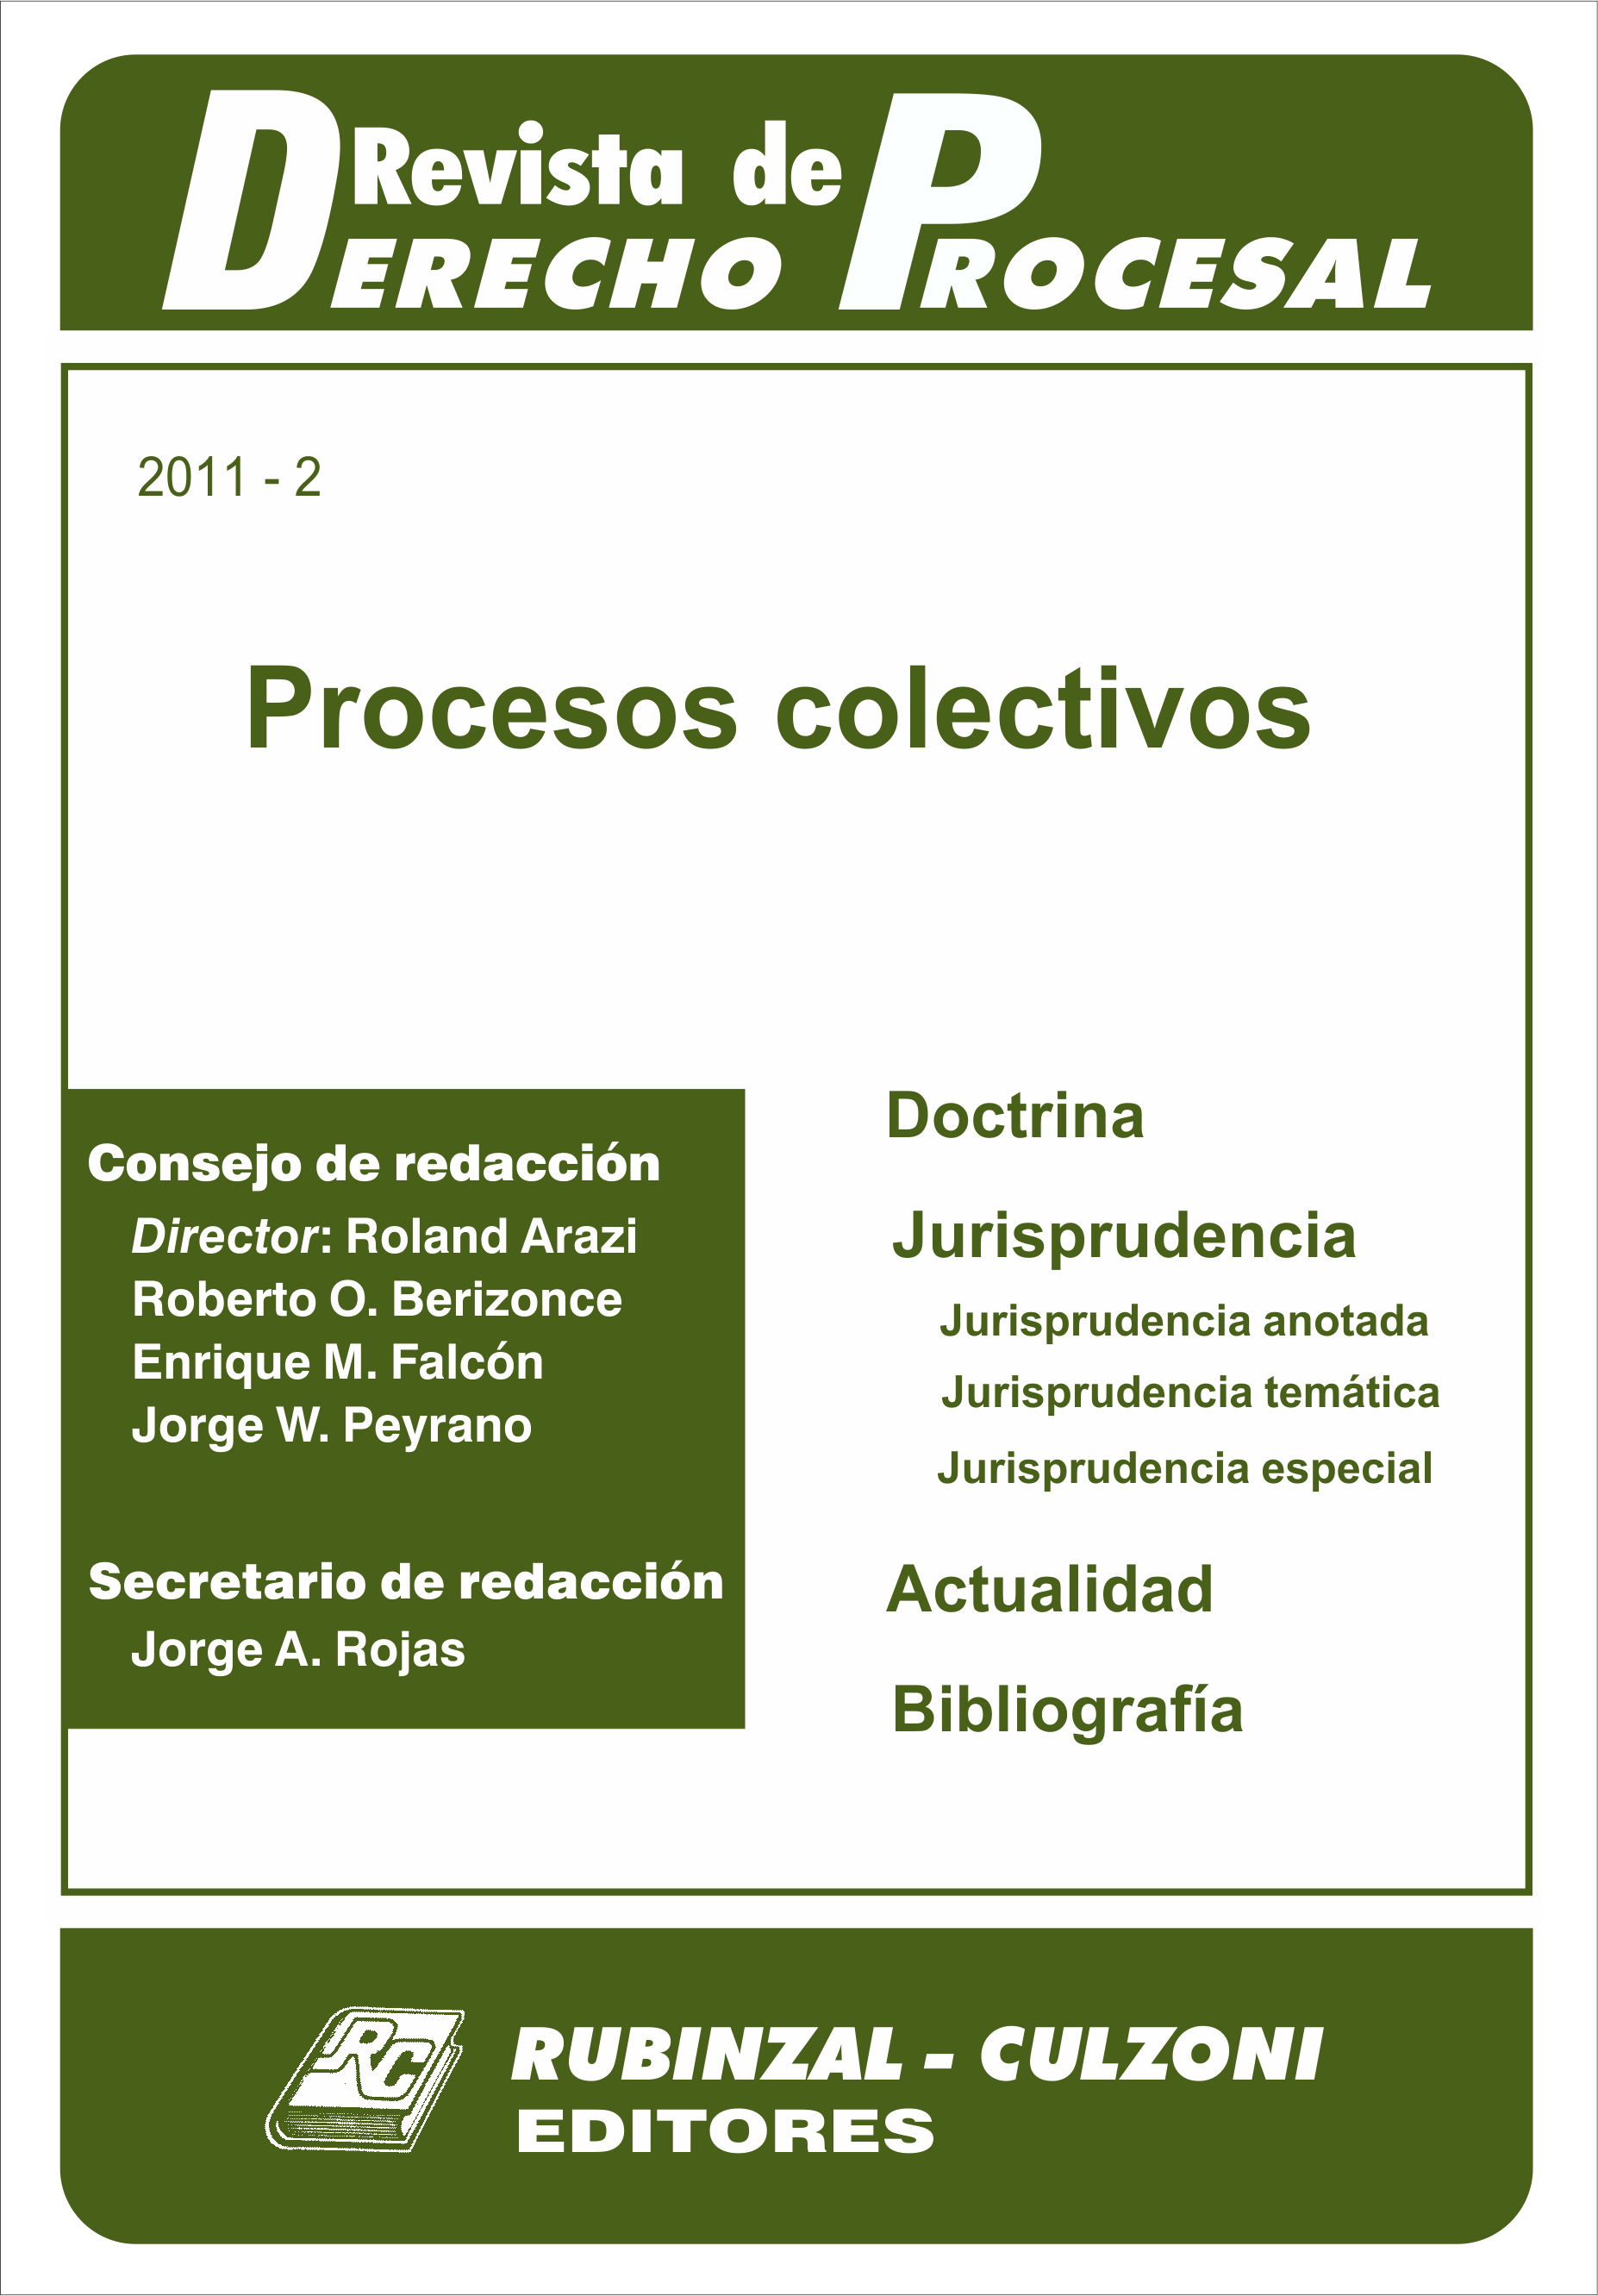 Revista de Derecho Procesal - Procesos colectivos.